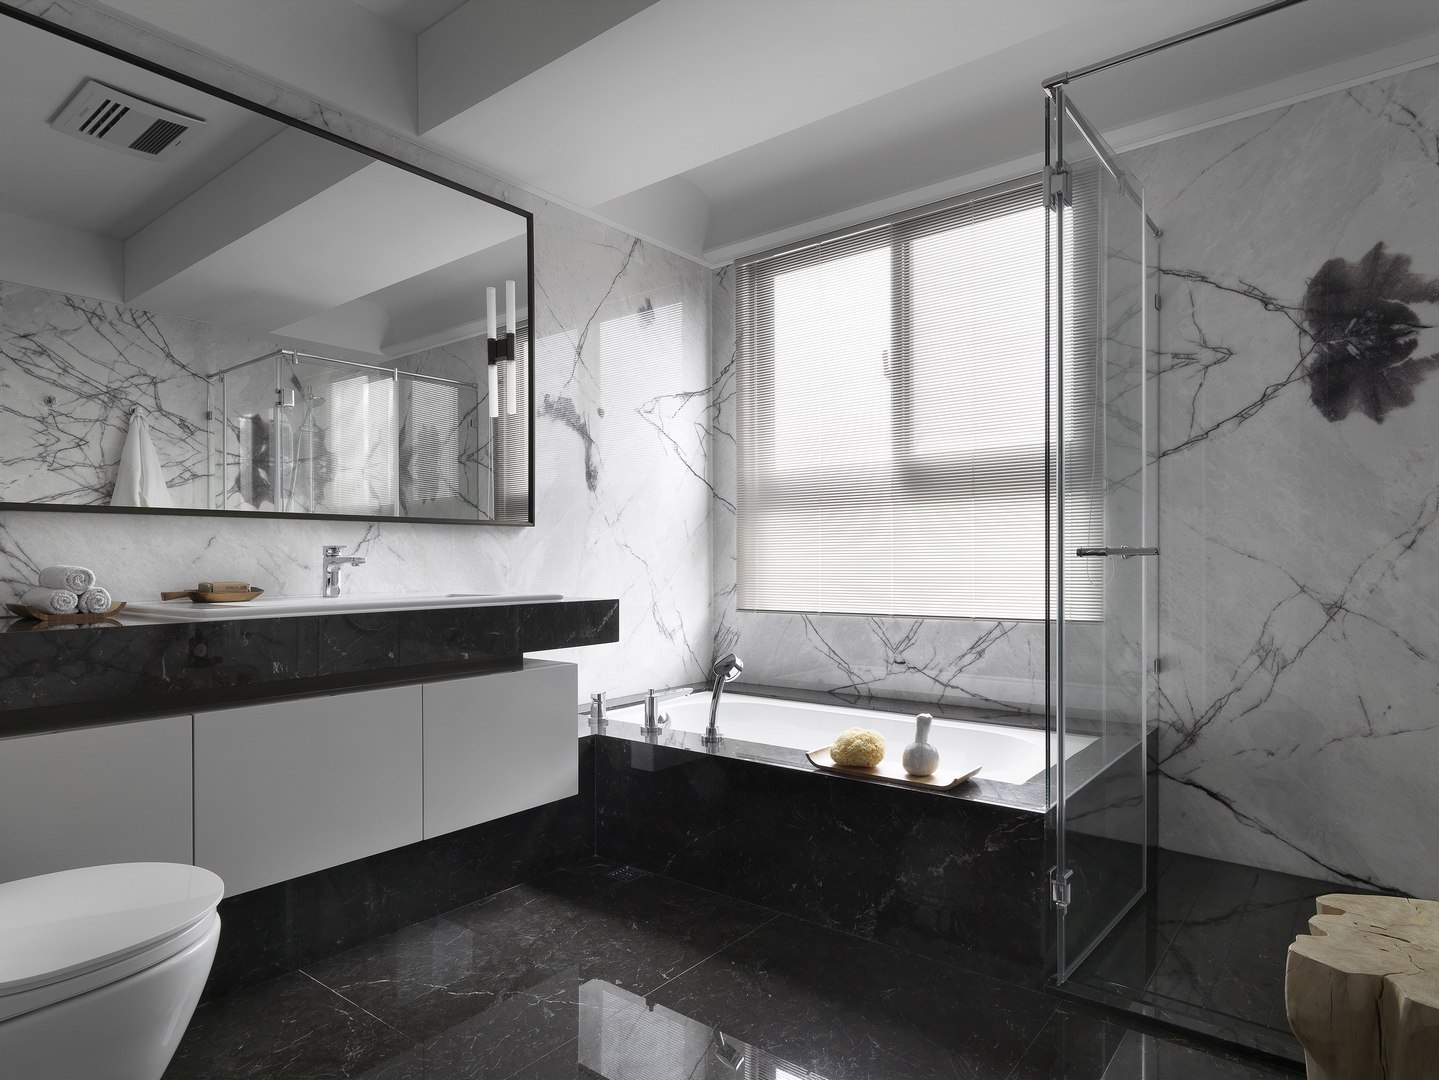 卫浴空间兼具淋浴房和浴缸，空间动线设计流畅有序，层次感很强。